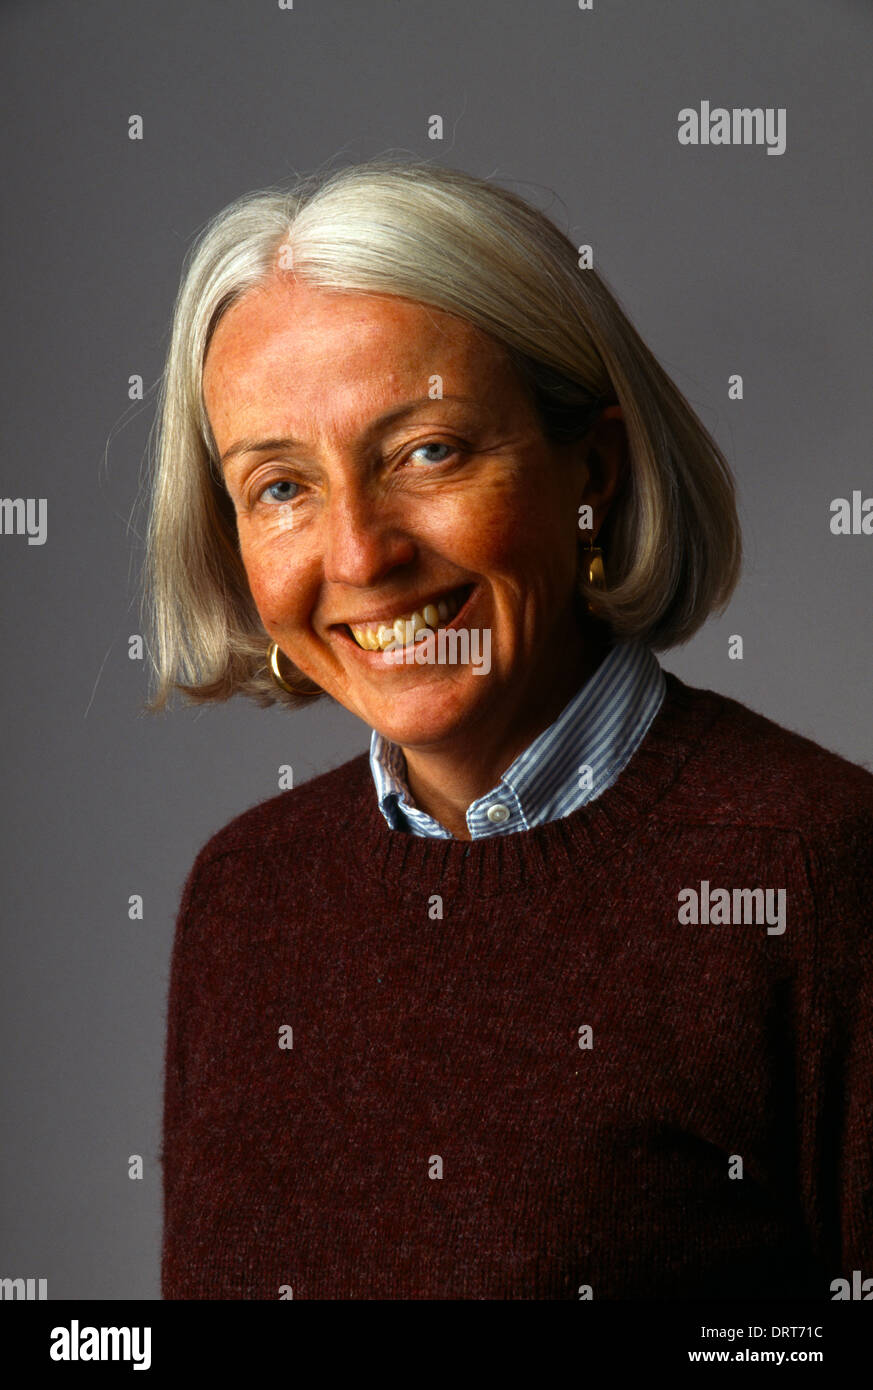 California, EE.UU. el retrato de una mujer de 60 años con cabello gris Foto de stock